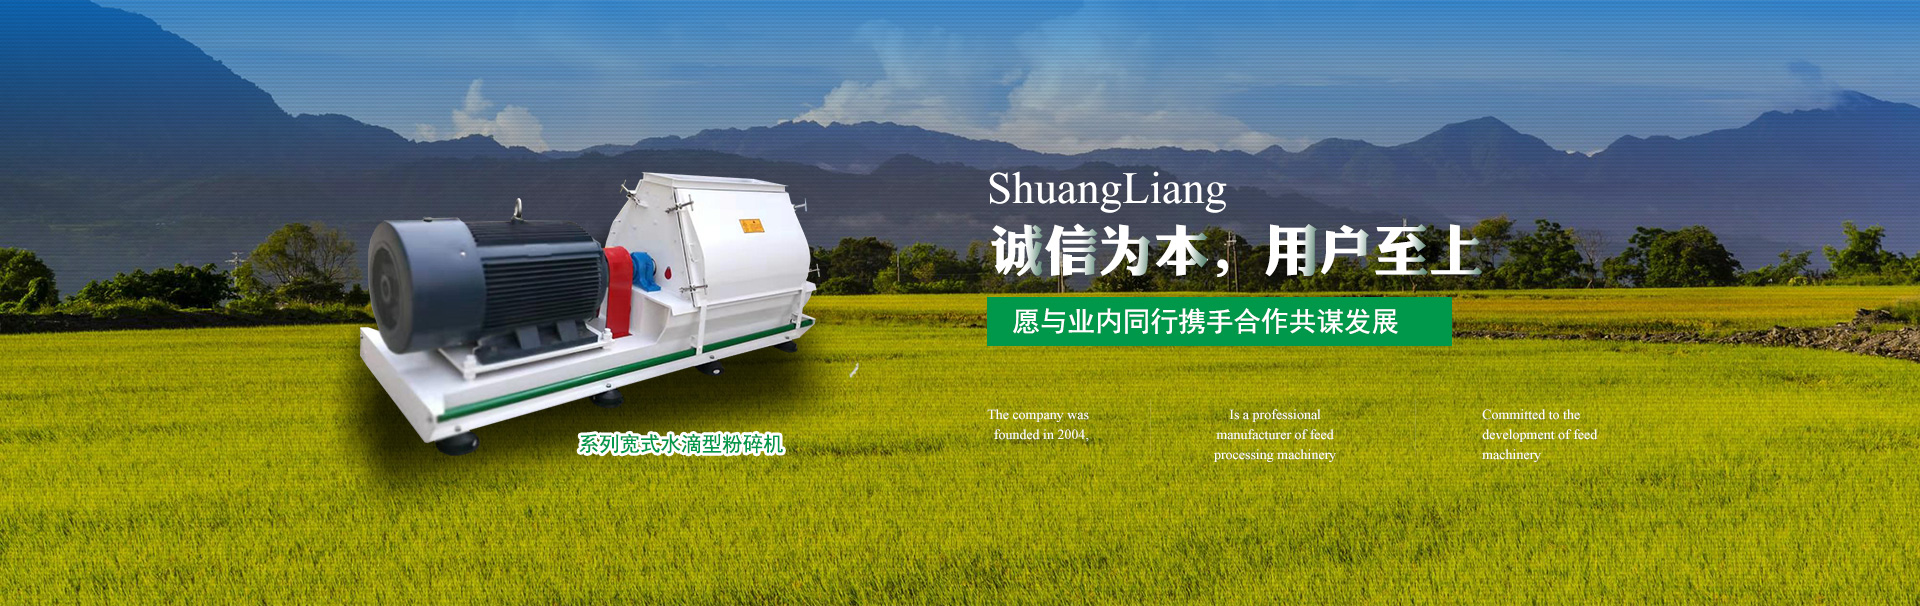 Tianmen Shuangliang Machinery Manufacturing Co., Ltd. 